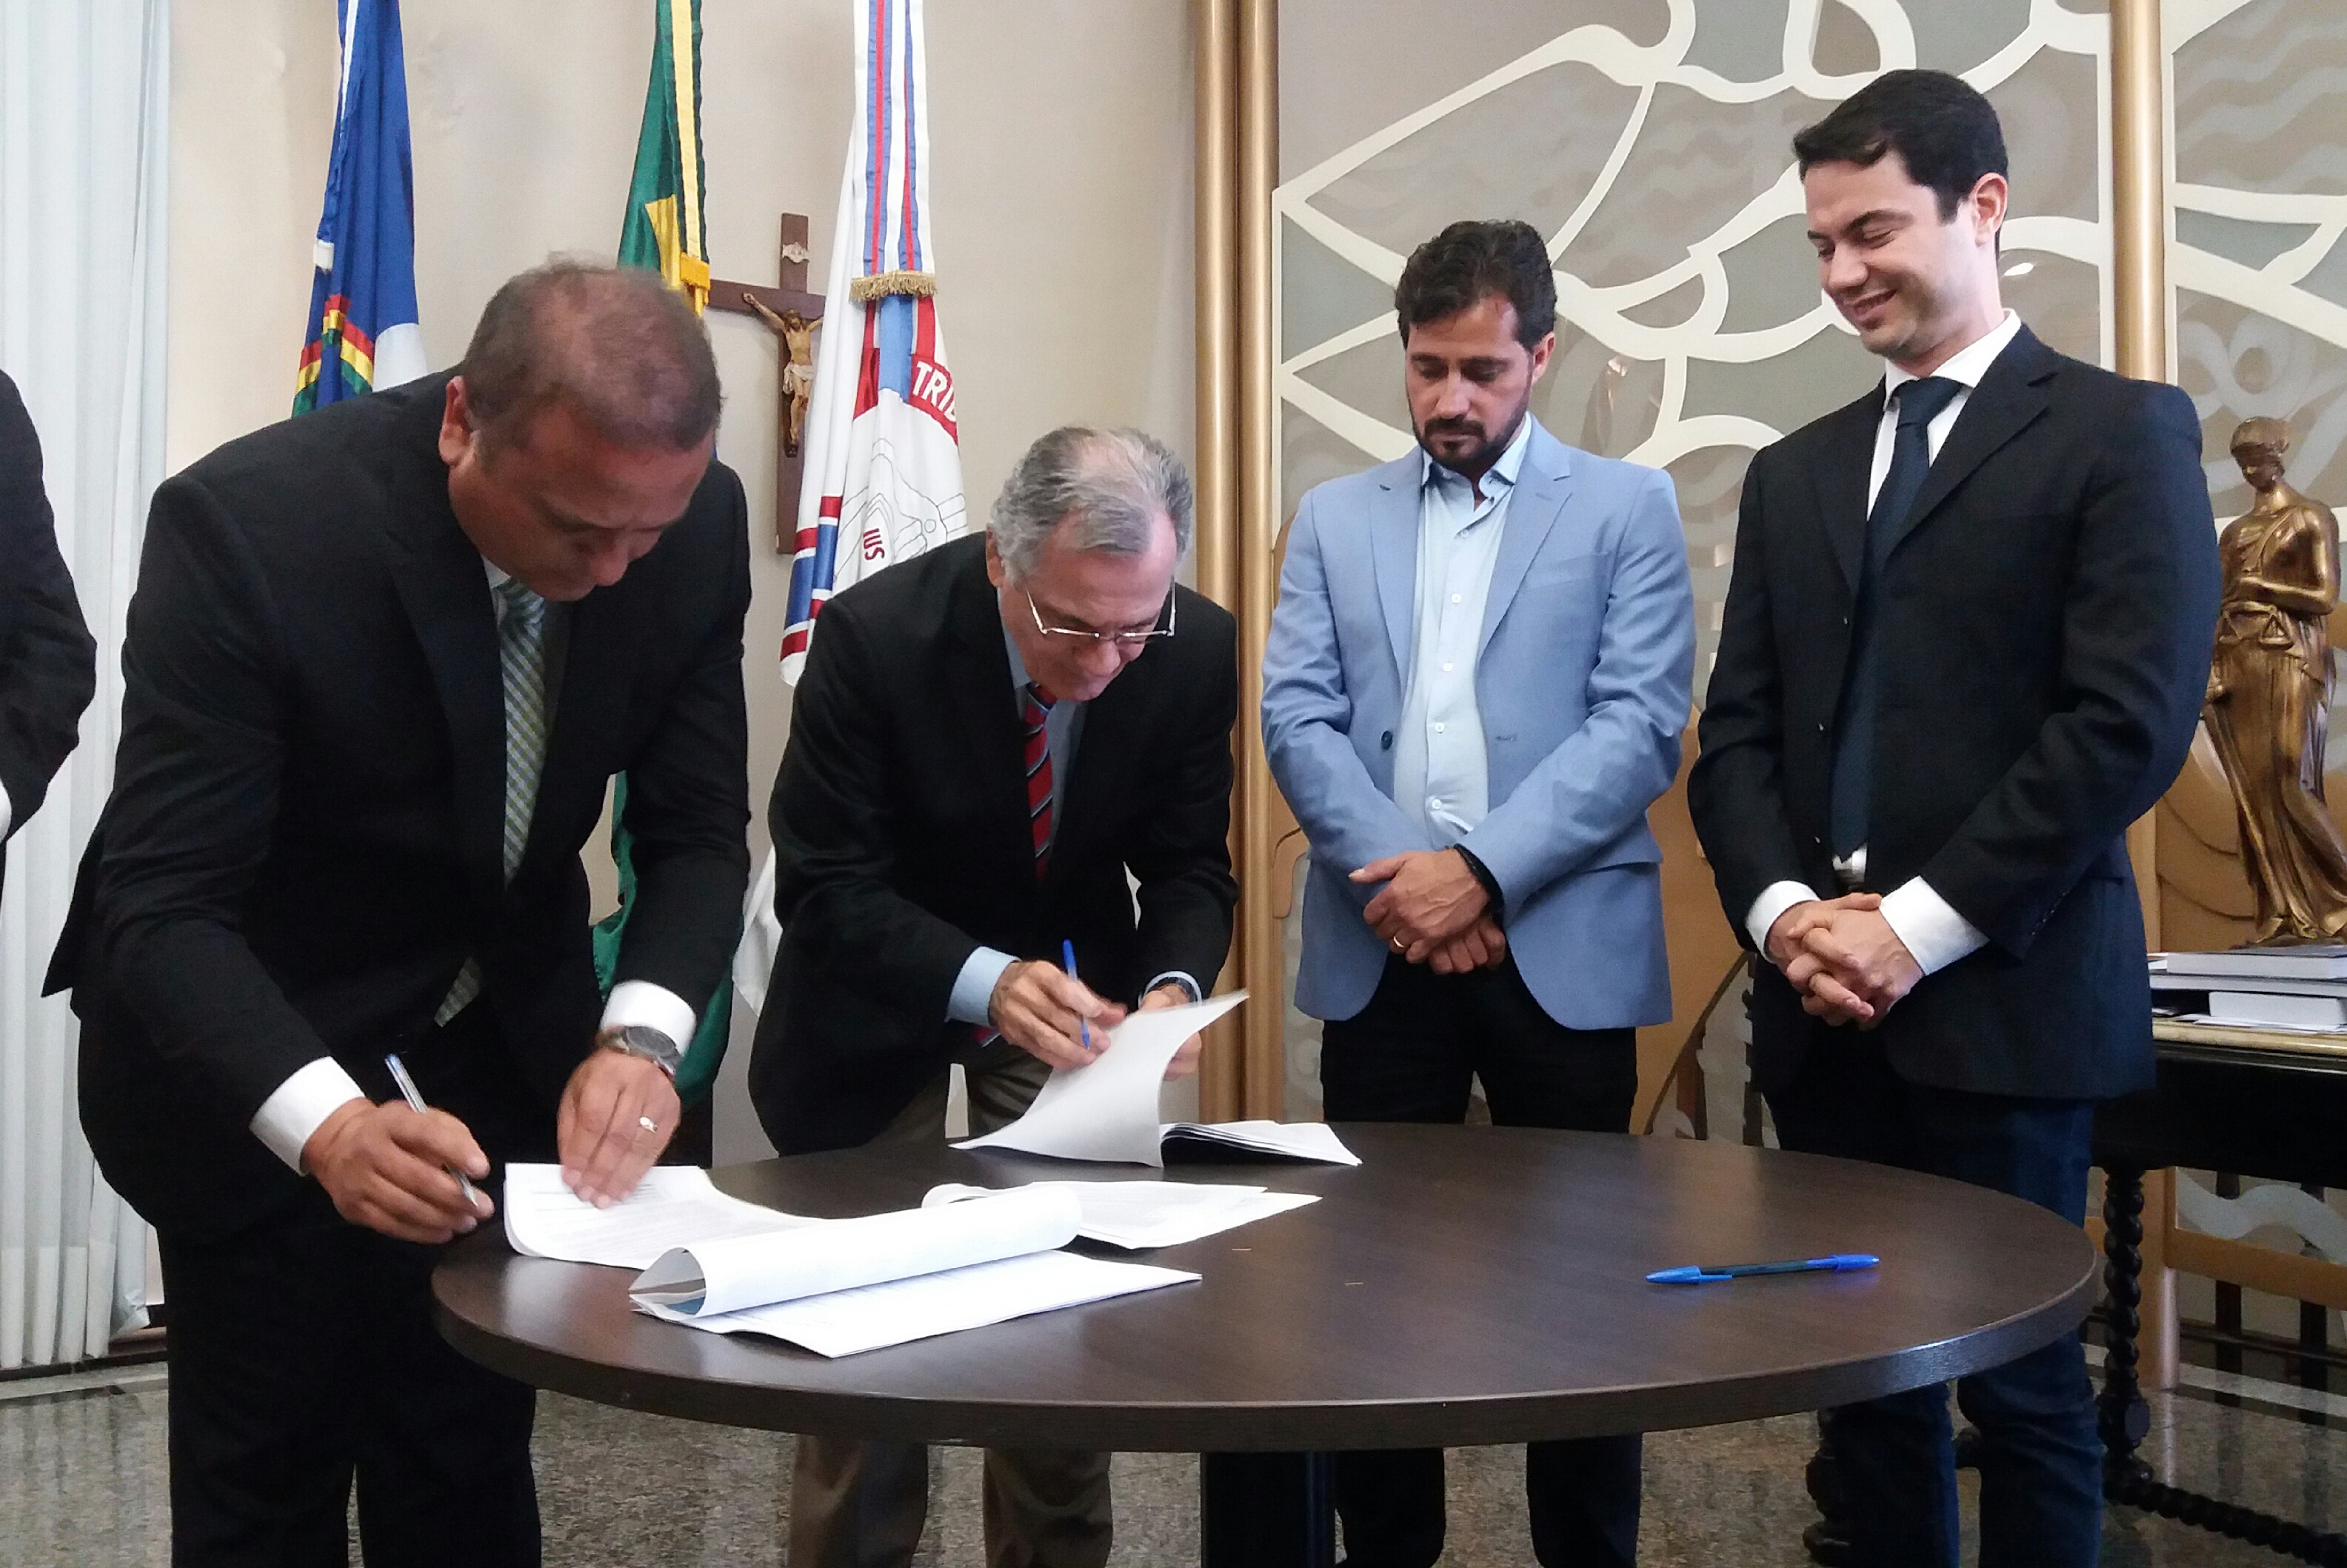 Desembargador-presidente Leopoldo Raposo assina documentos